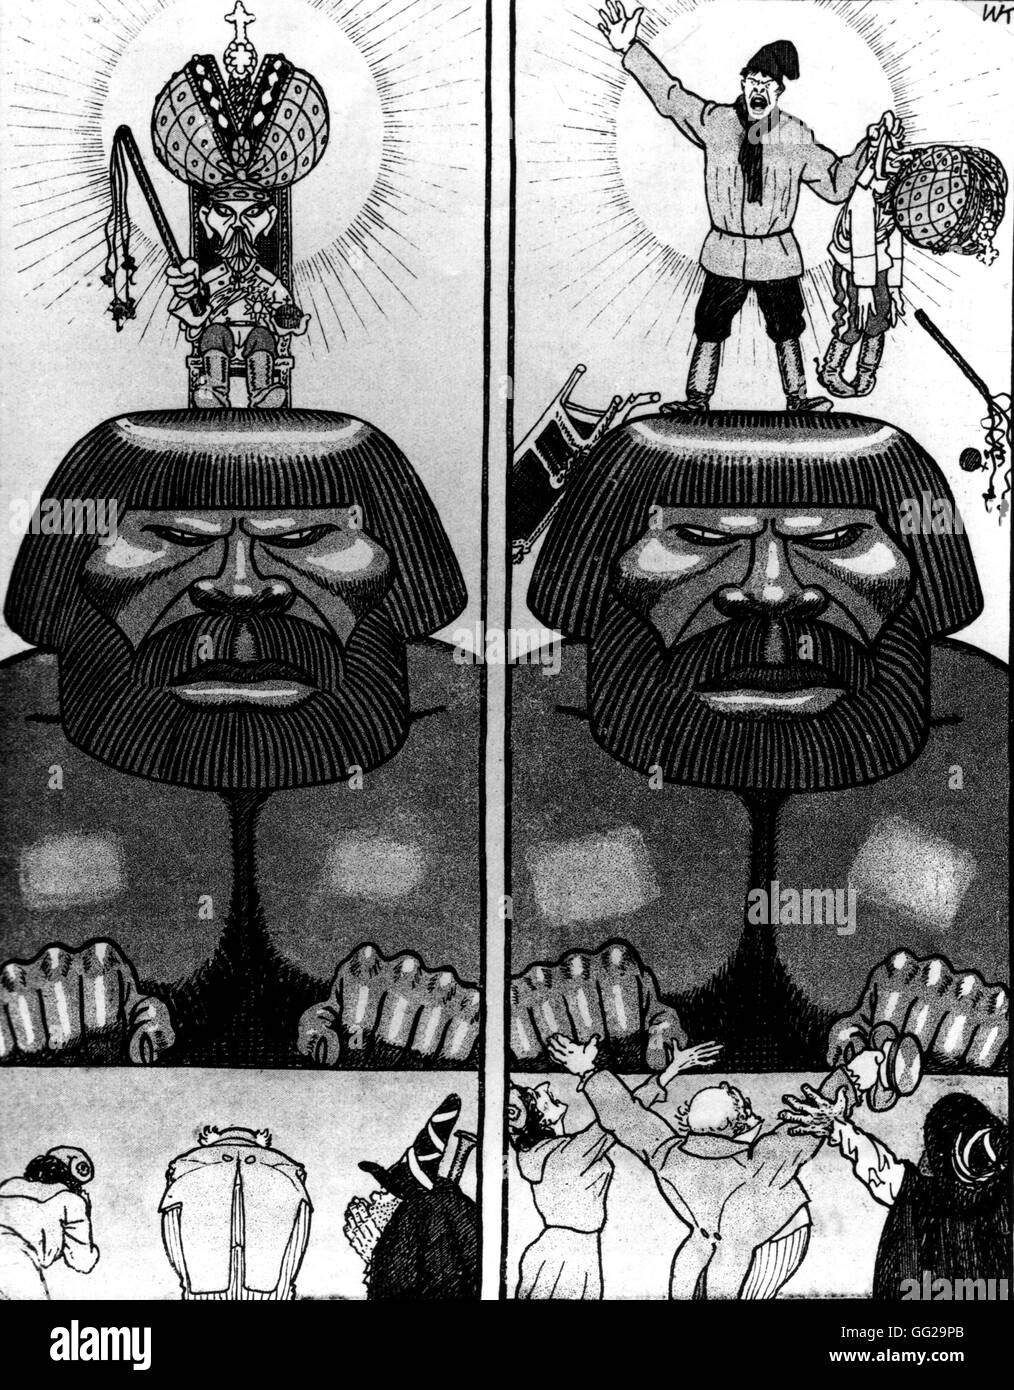 Deutsche satirische Cartoon über die russische Revolution. "Die gestrige und heutige Idol. Czarism gerettet, jetzt haben sie es verworfen "Sowjetunion 1917 Stockfoto